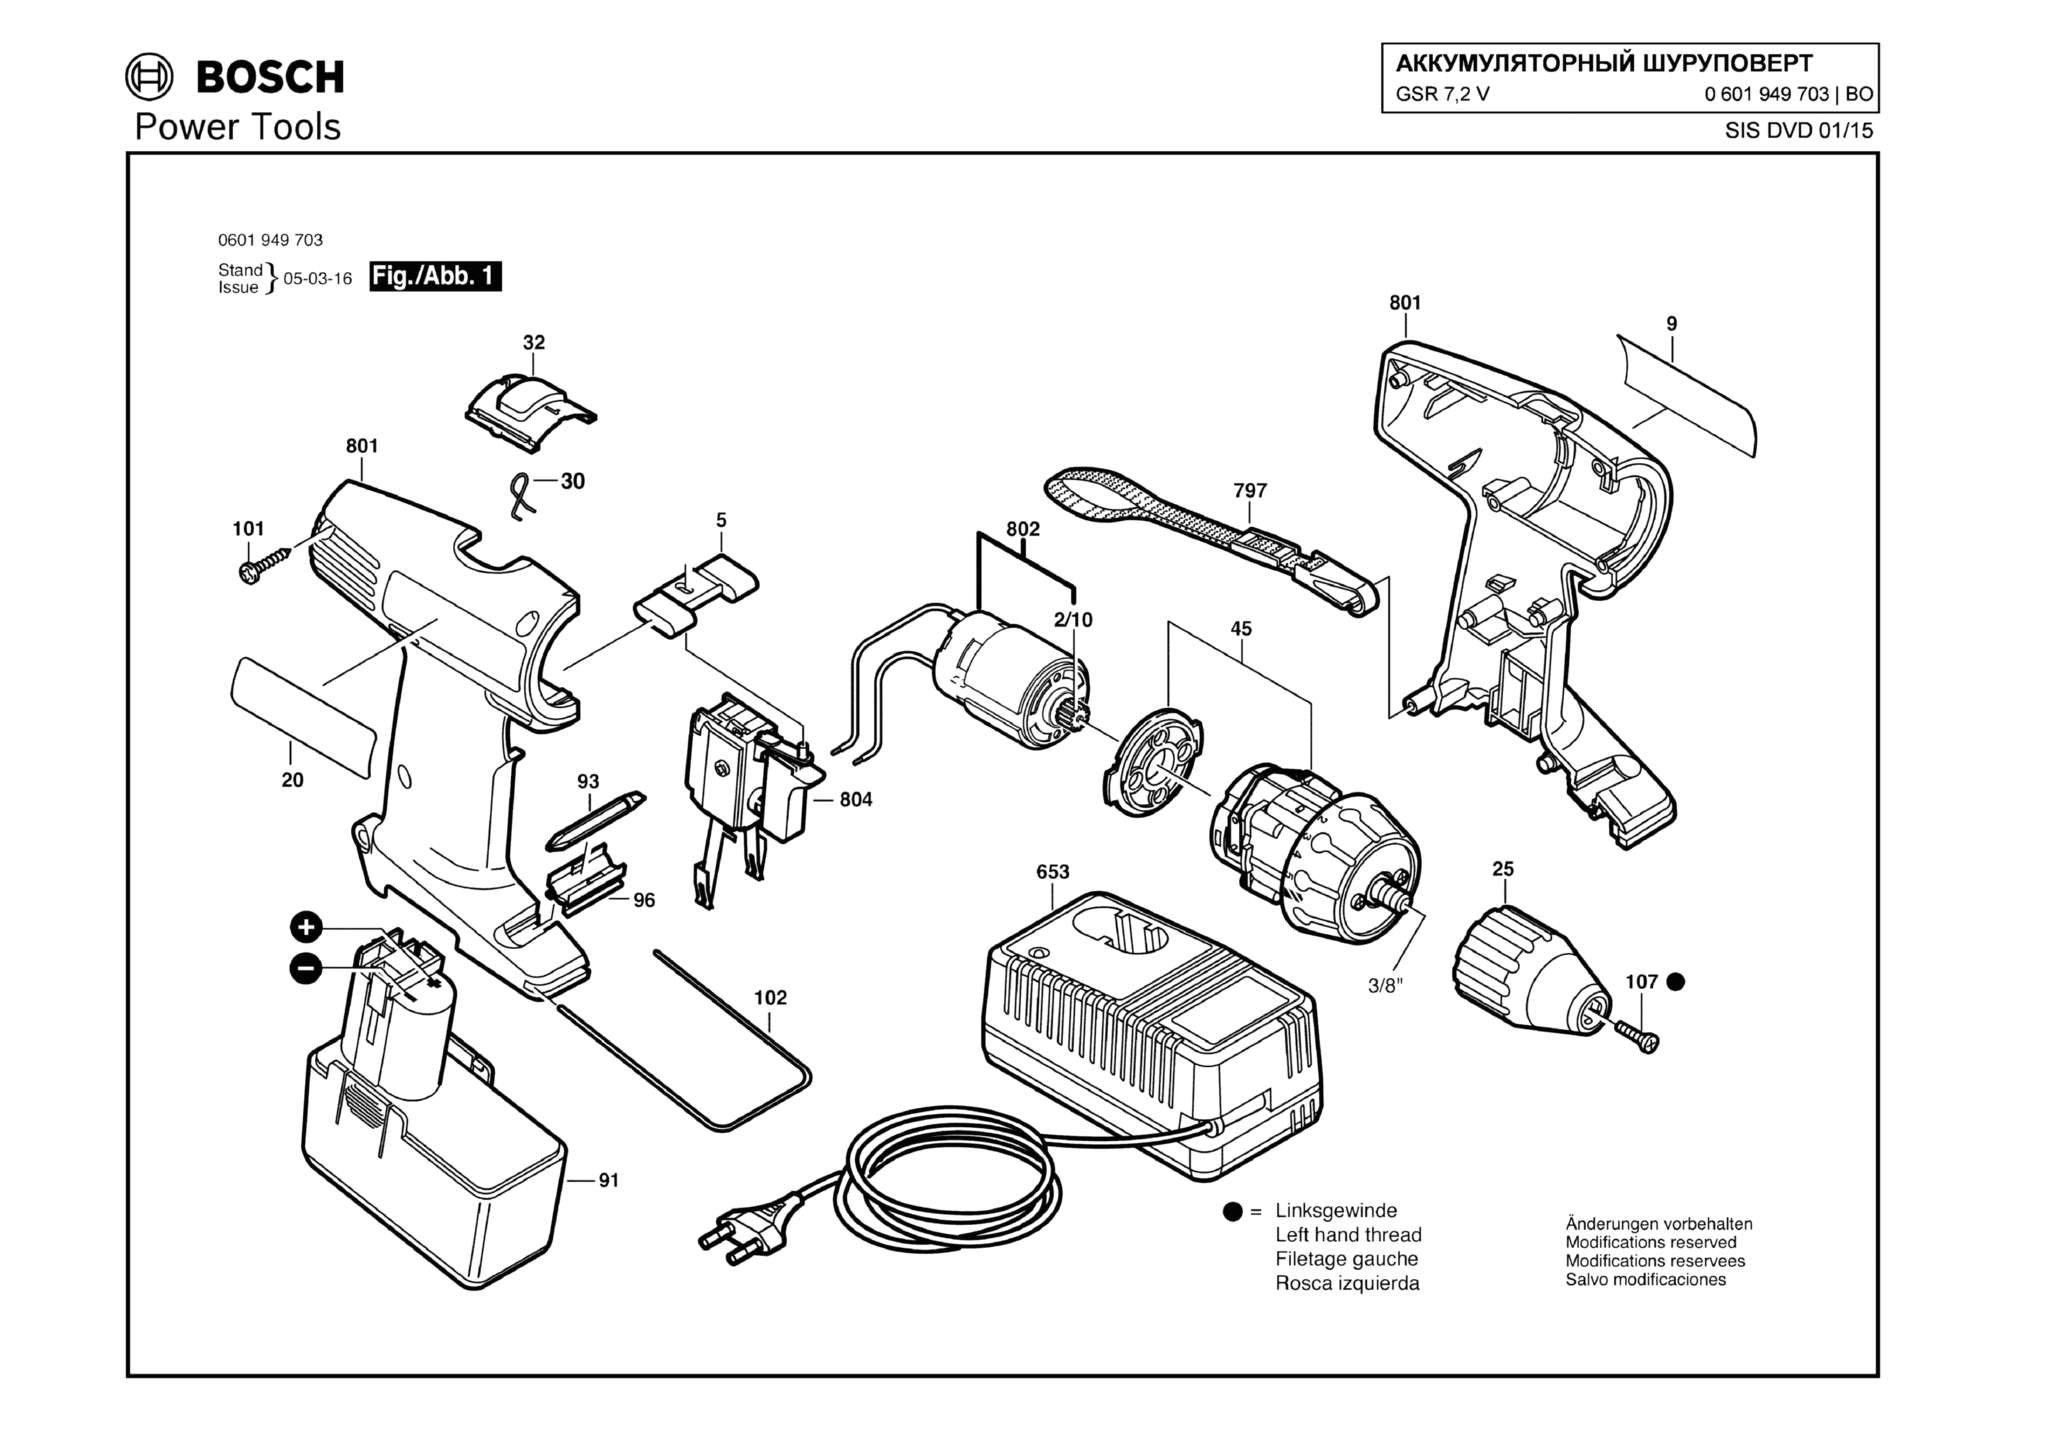 Запчасти, схема и деталировка Bosch GSR 7,2 V (ТИП 0601949703)